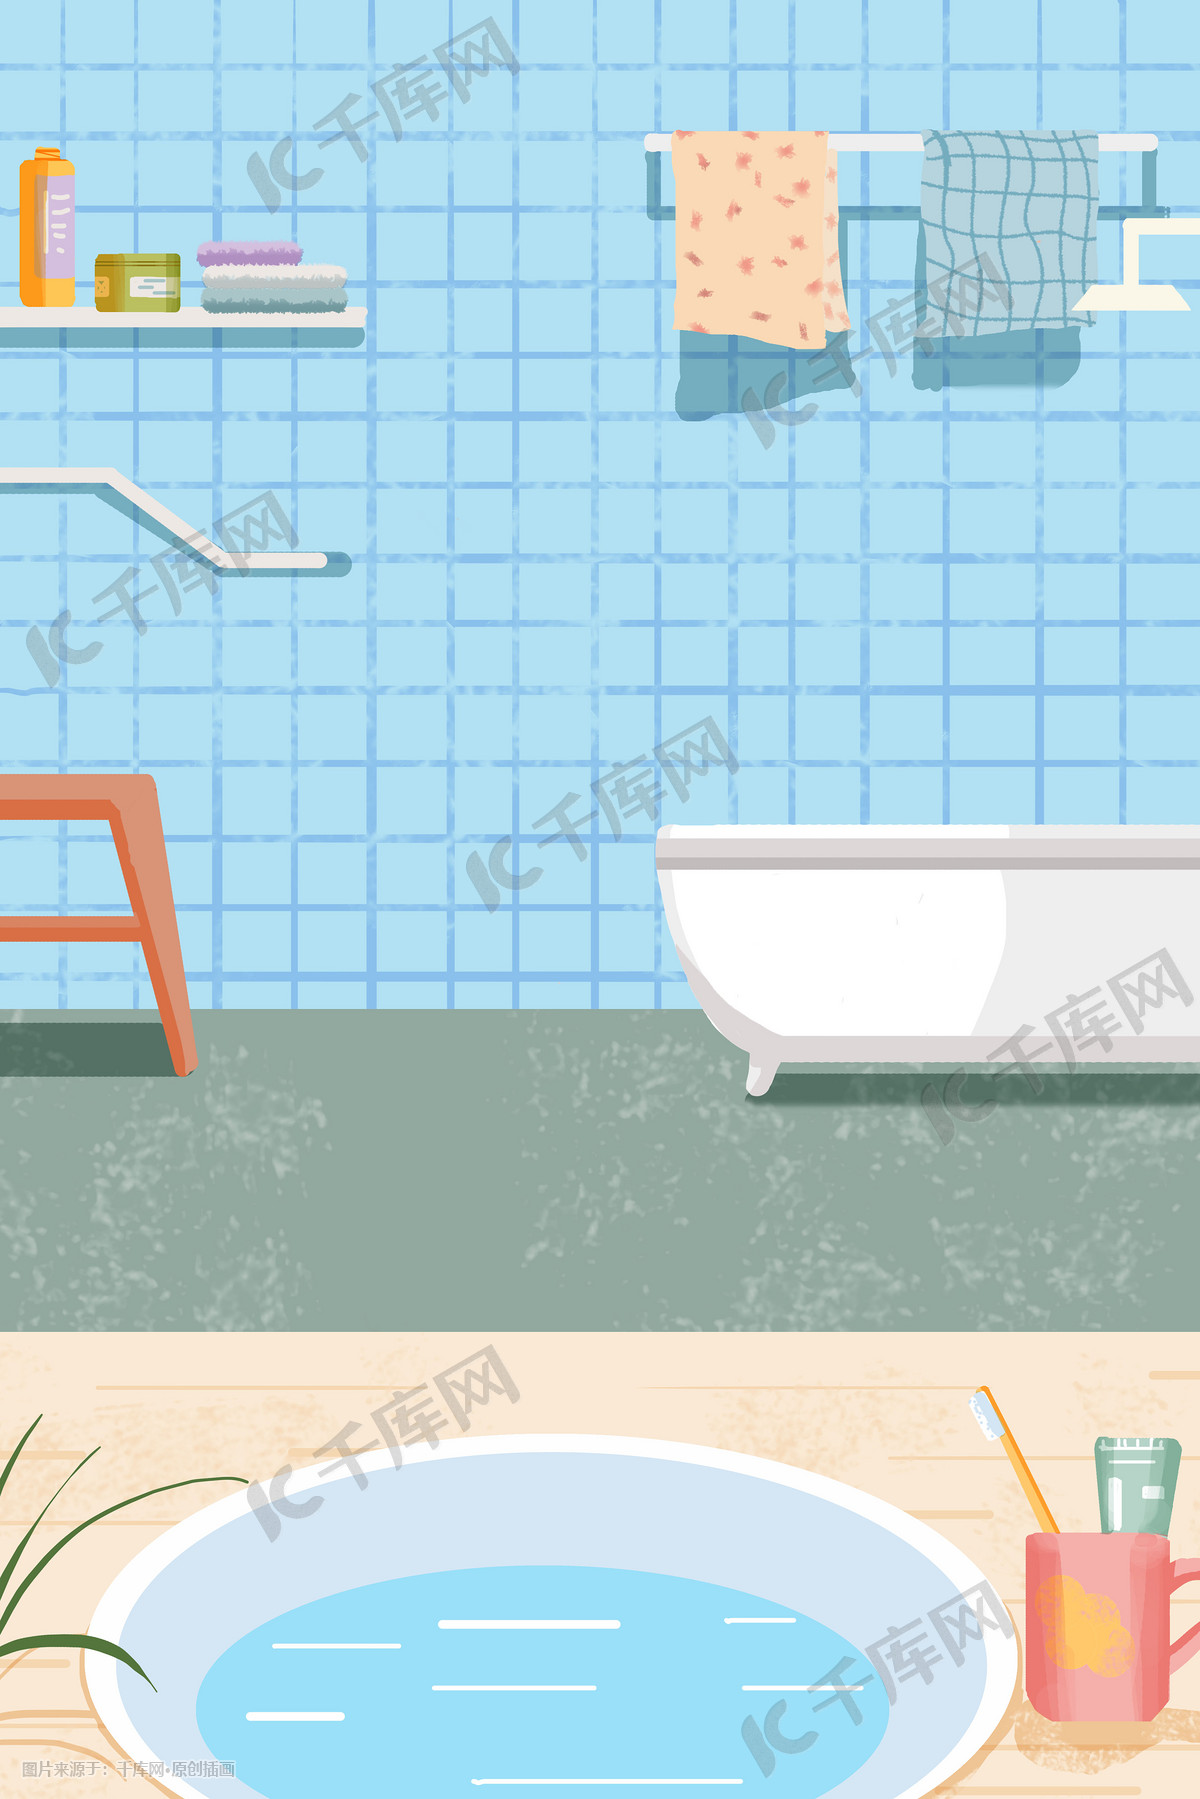 진한 녹색 욕실 일러스트, 목욕통, 라이브러리, 수건 PNG 일러스트 및 PSD 이미지 무료 다운로드 - Pngtree